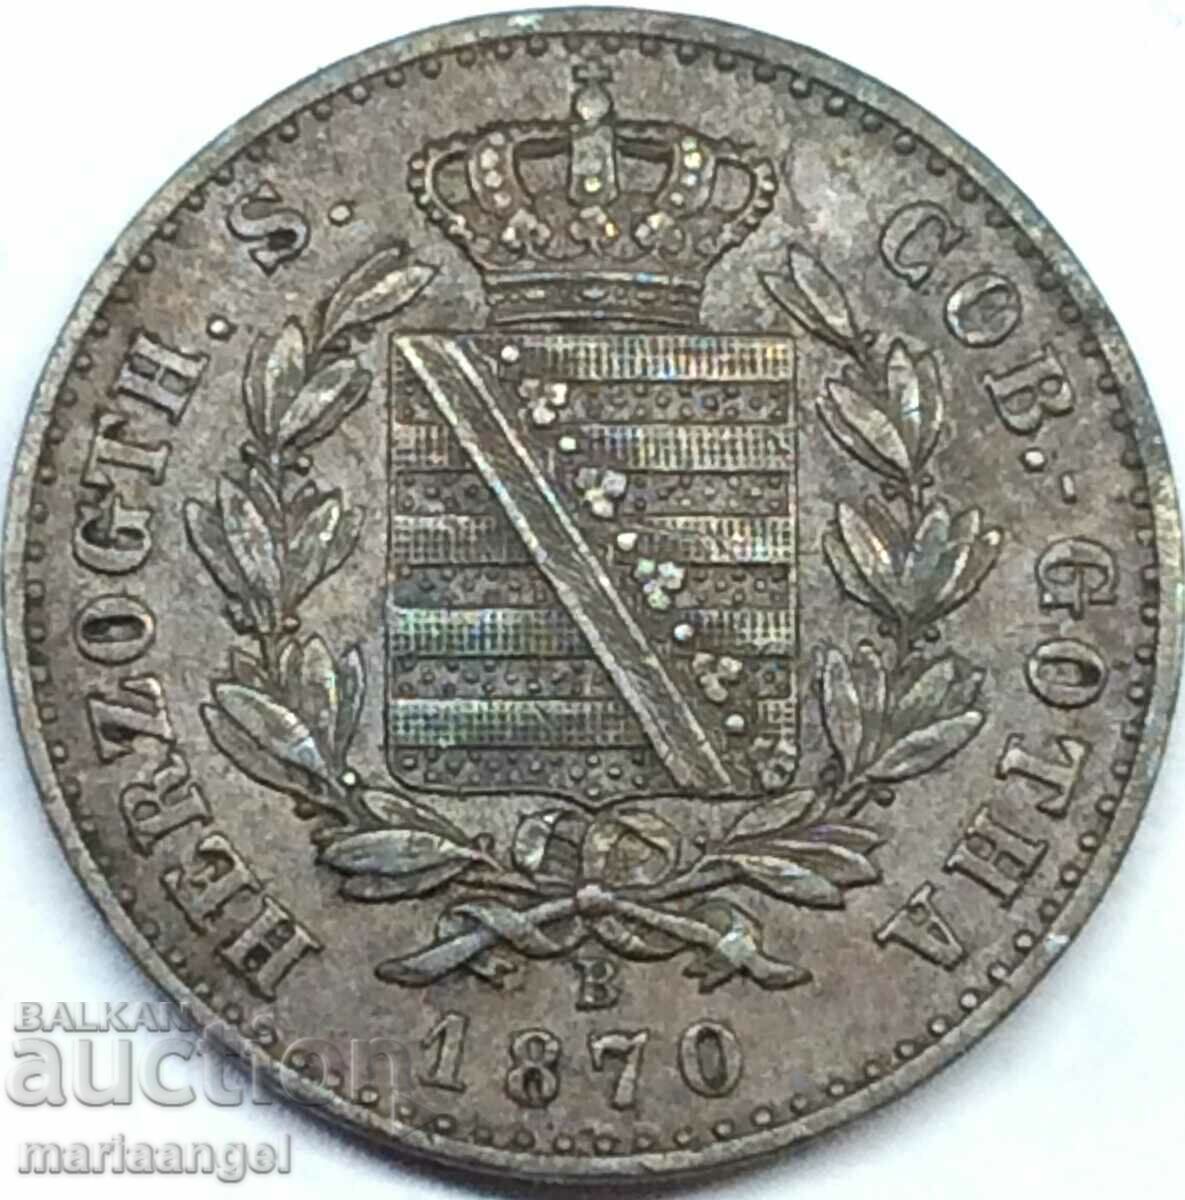 Saxony 2 Pfennig 1870 Germany Duchy of Coburg-Gotha